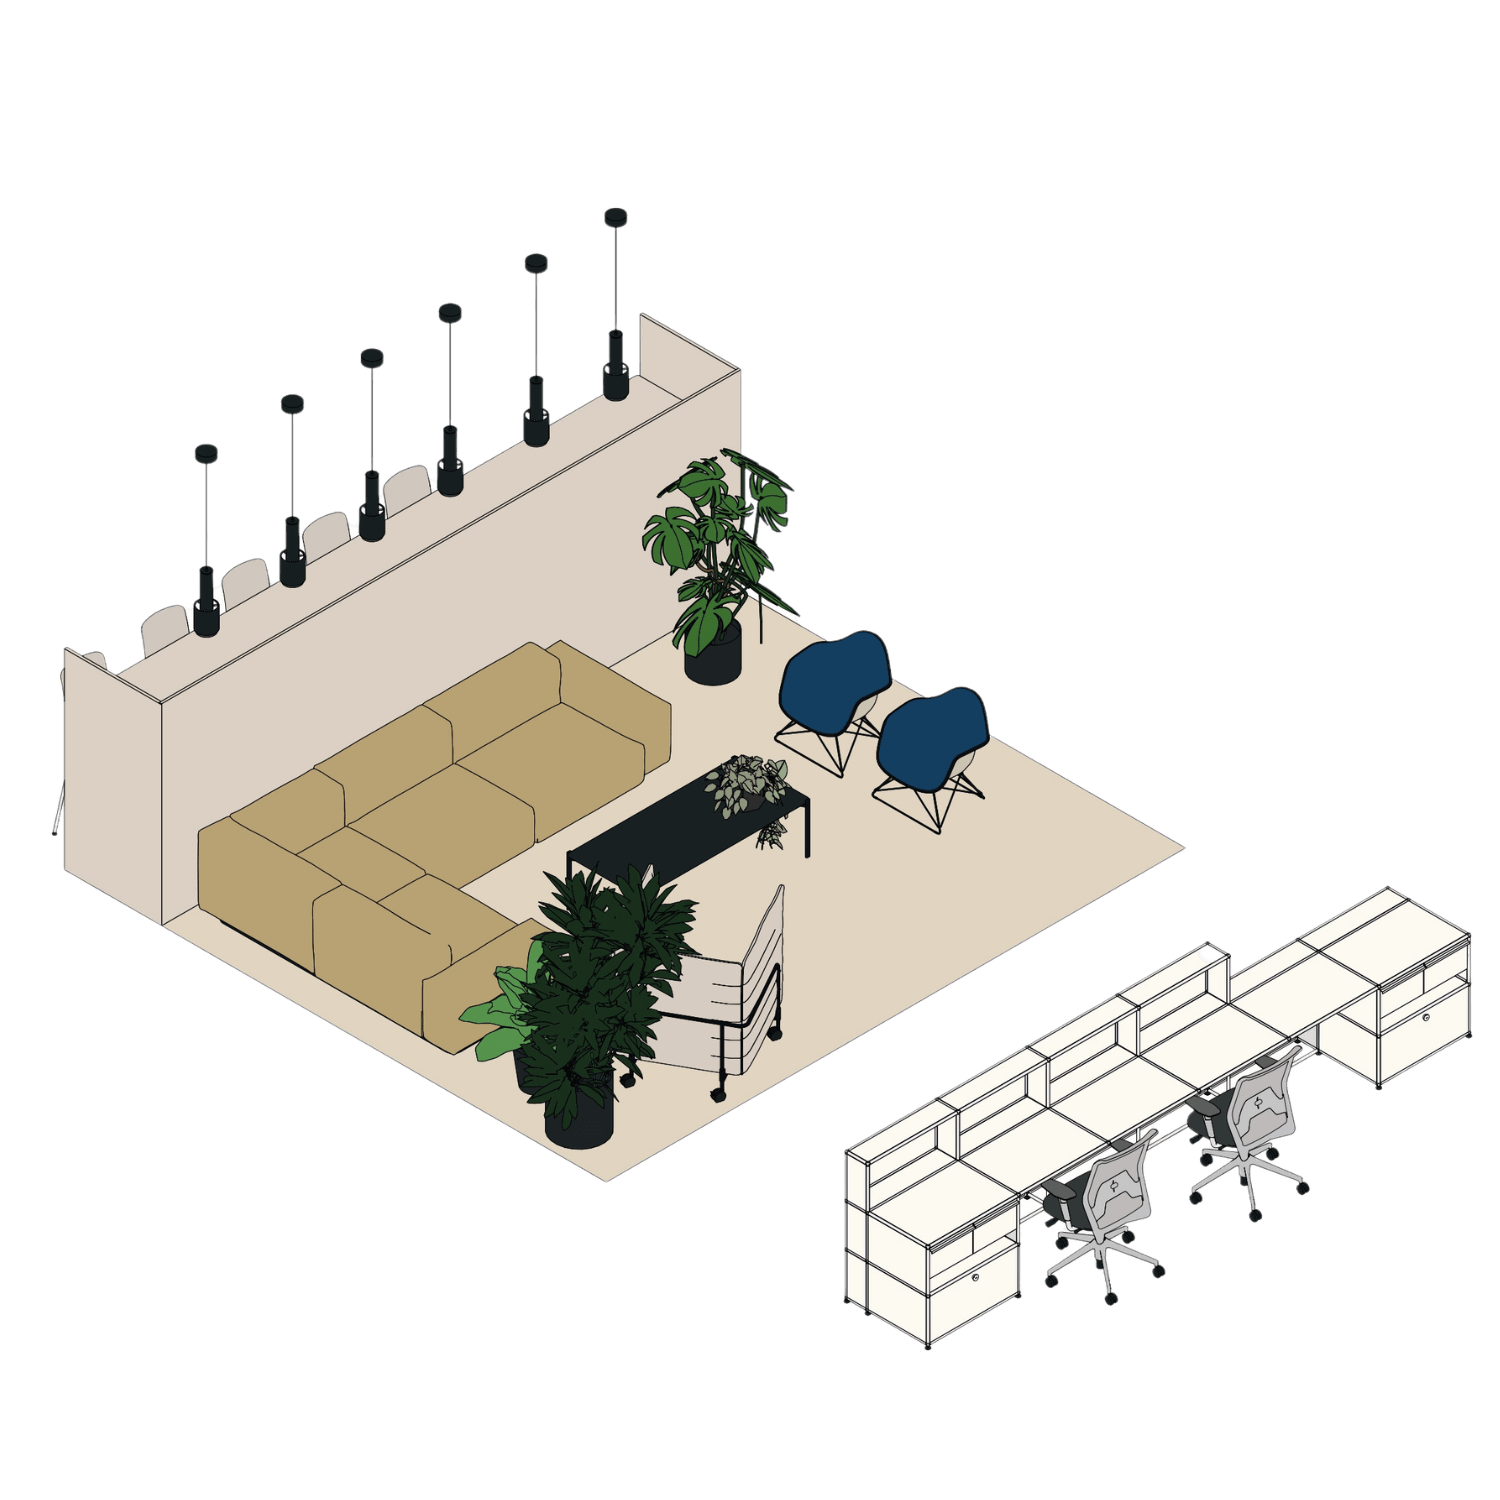 reception area or lounge area